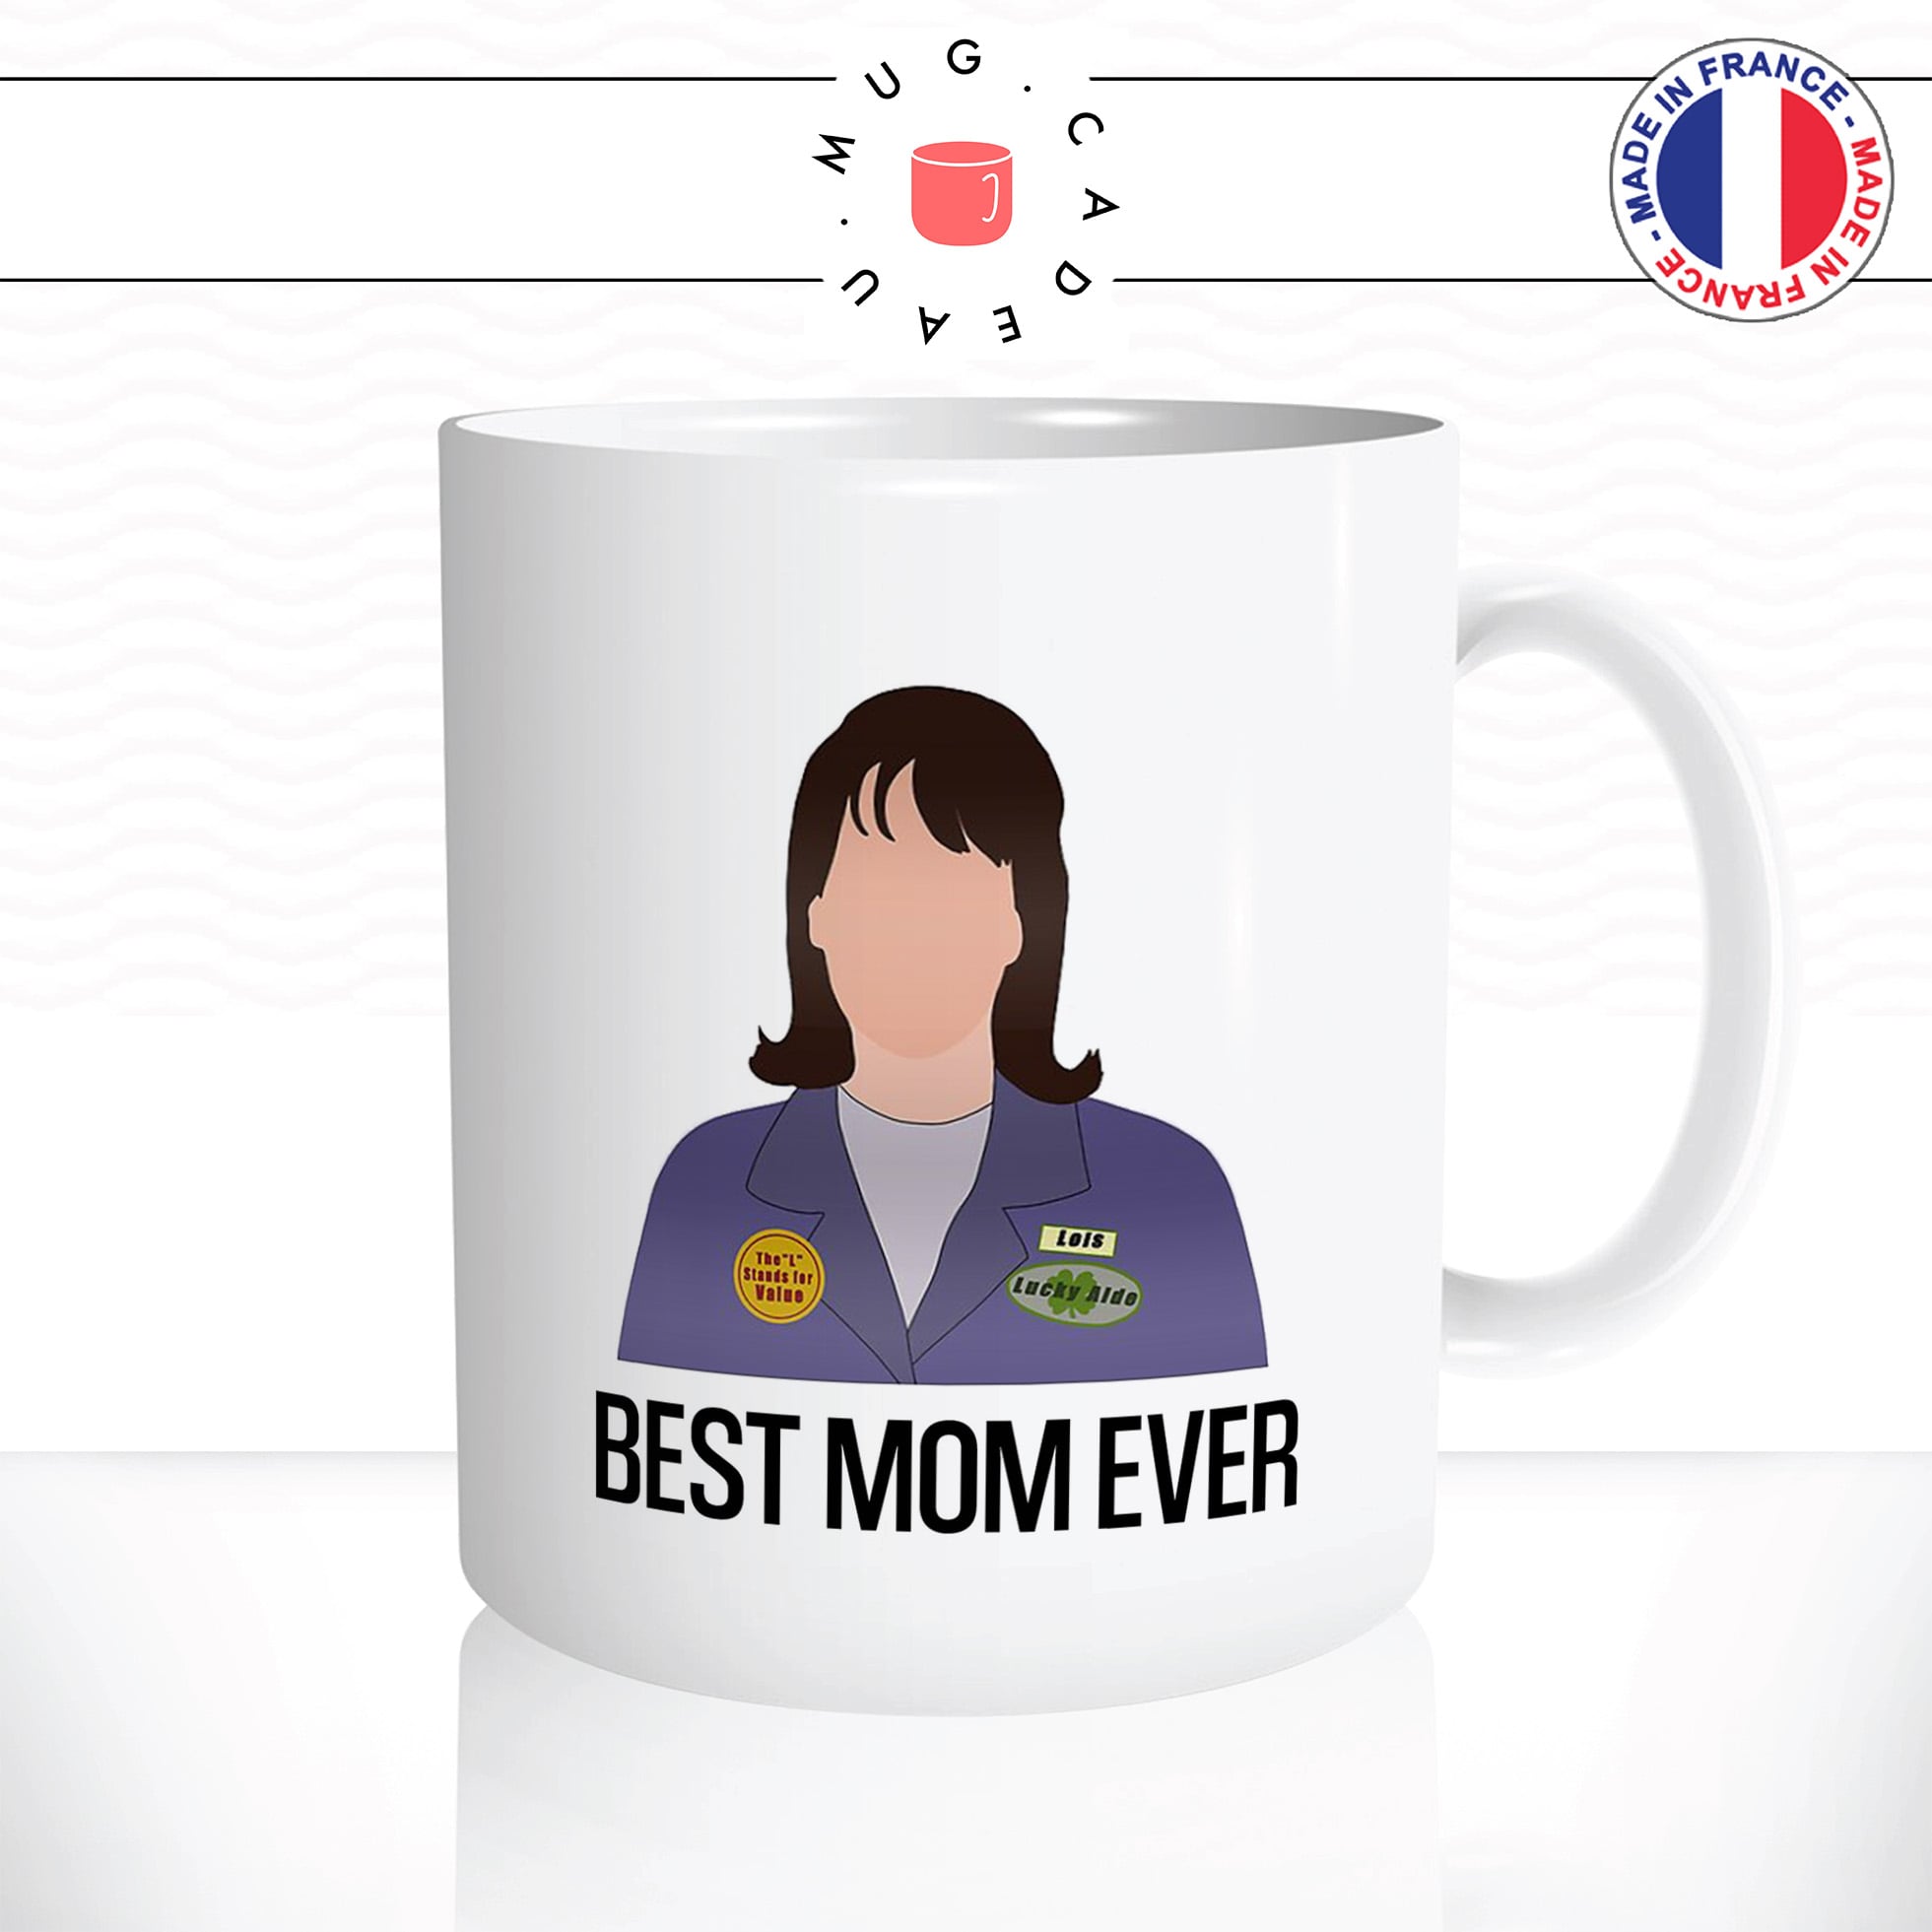 mug-tasse-best-mom-ever-maman-série-malcolm-loïs-famille-drole-télé-café-thé-humour-fun-idée-cadeau-original-personnalisée2-min